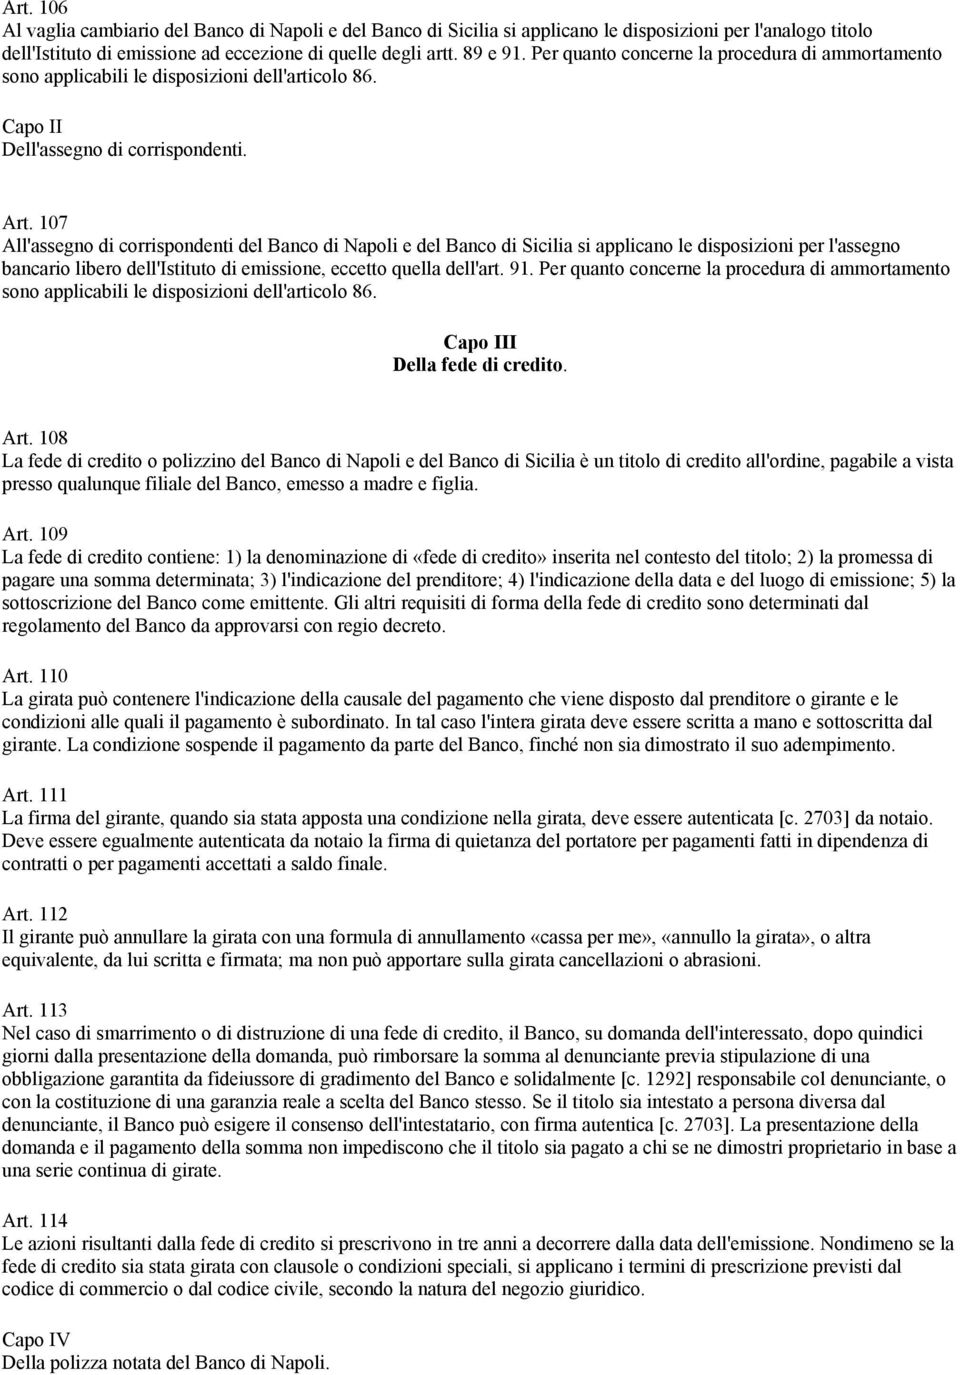 107 All'assegno di corrispondenti del Banco di Napoli e del Banco di Sicilia si applicano le disposizioni per l'assegno bancario libero dell'istituto di emissione, eccetto quella dell'art. 91.